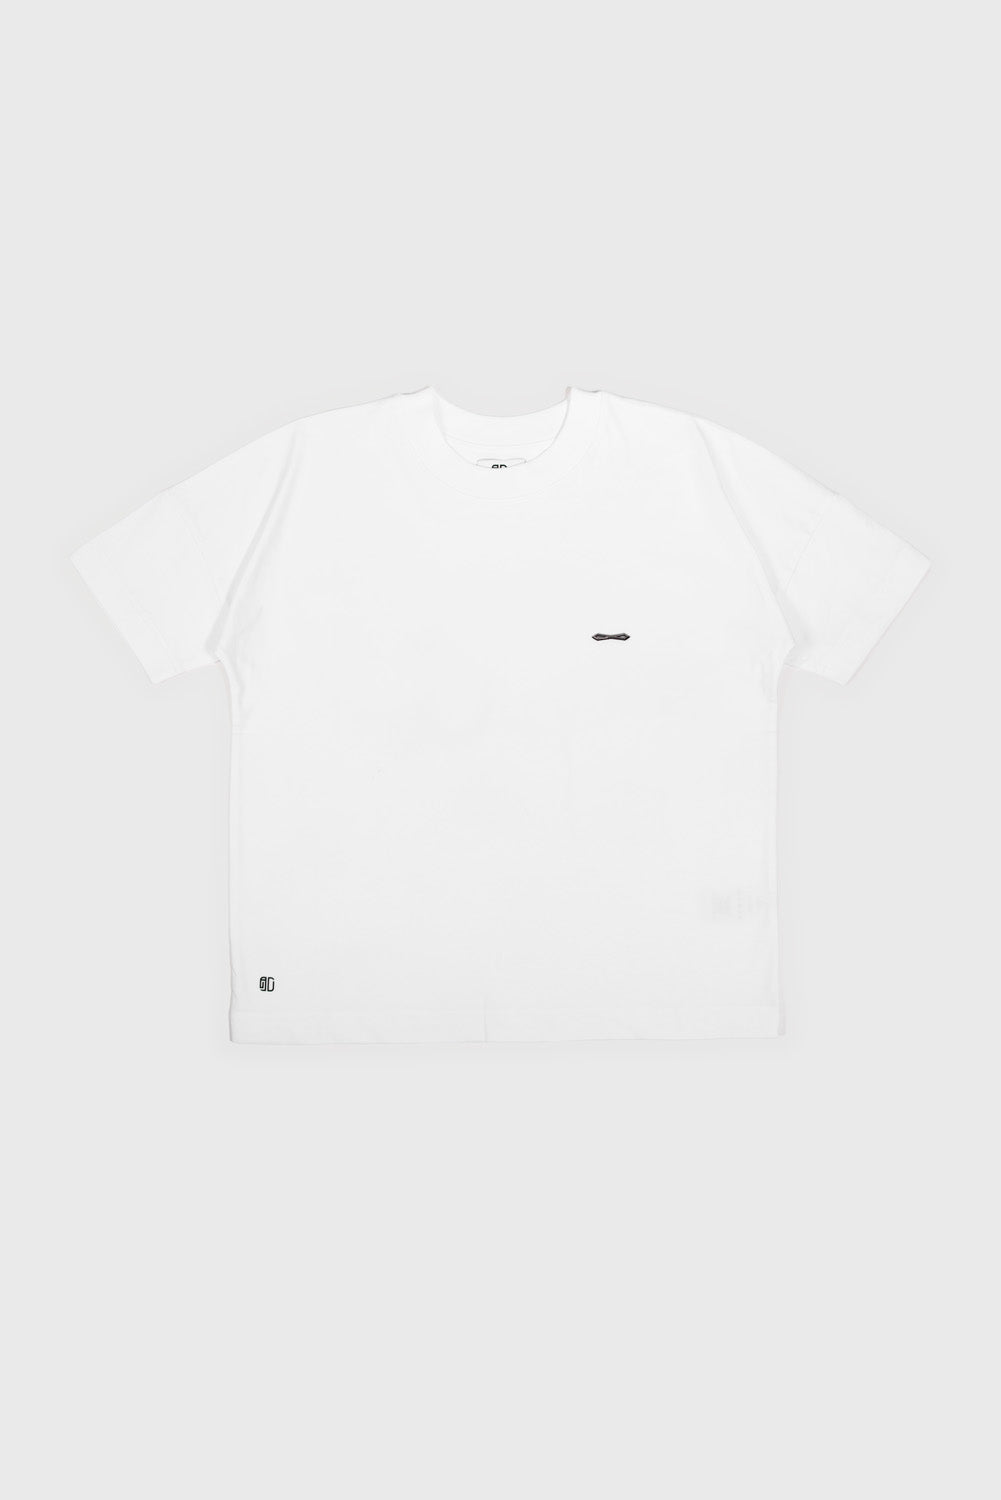 Charly white t-shirt